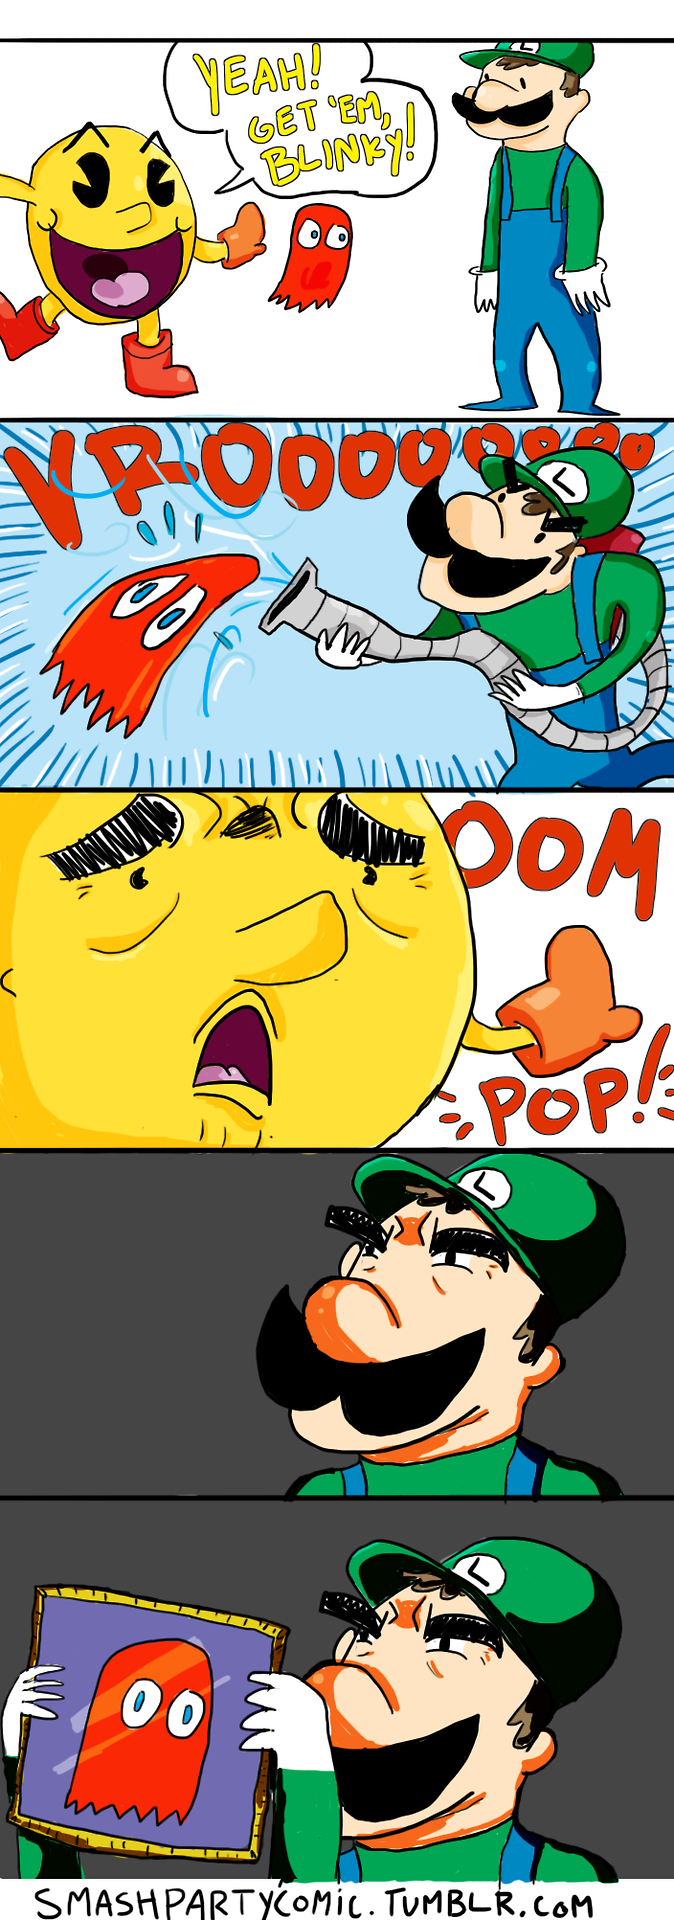 Luigi vs pacman - YouTube